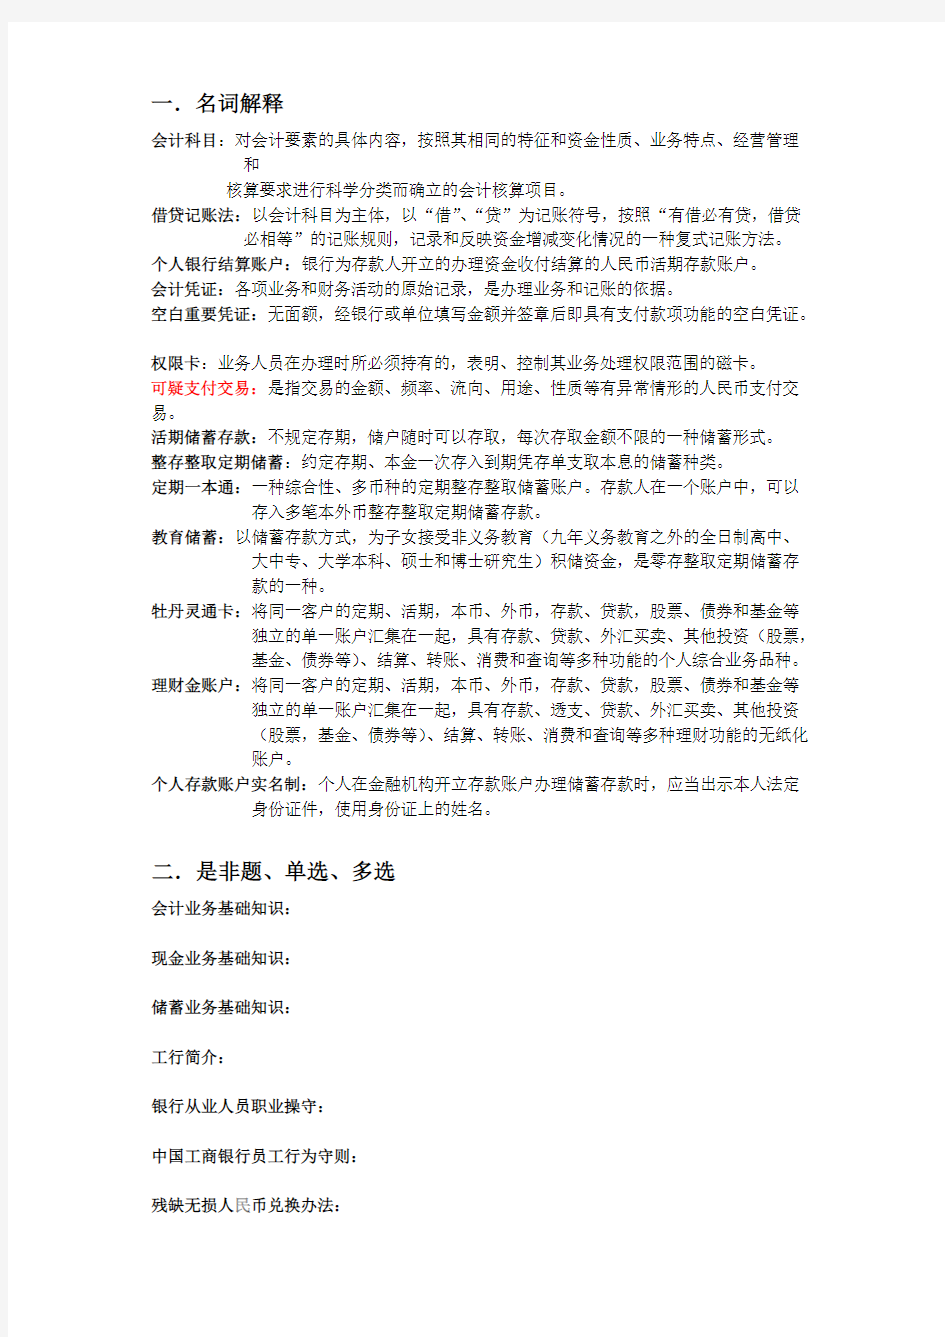 【VIP专享】中国工商银行个人金融业务二十二禁